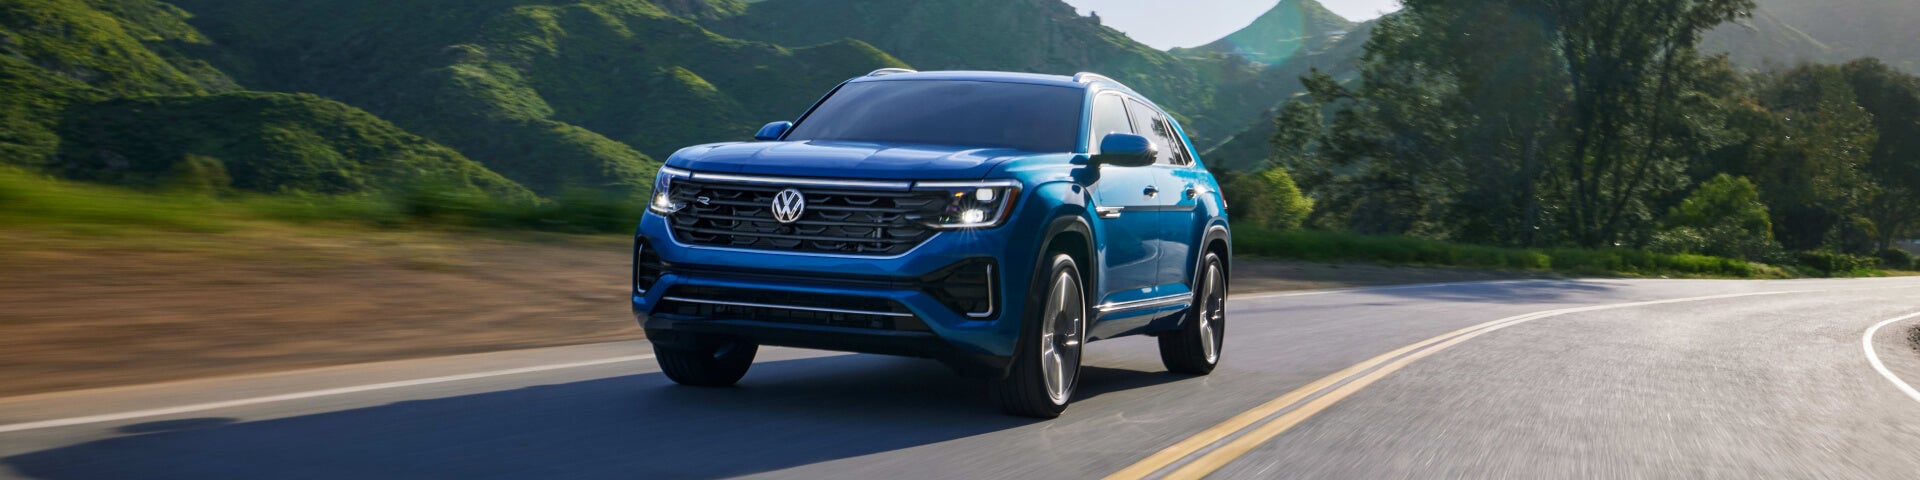 VW Taos Lease Deals